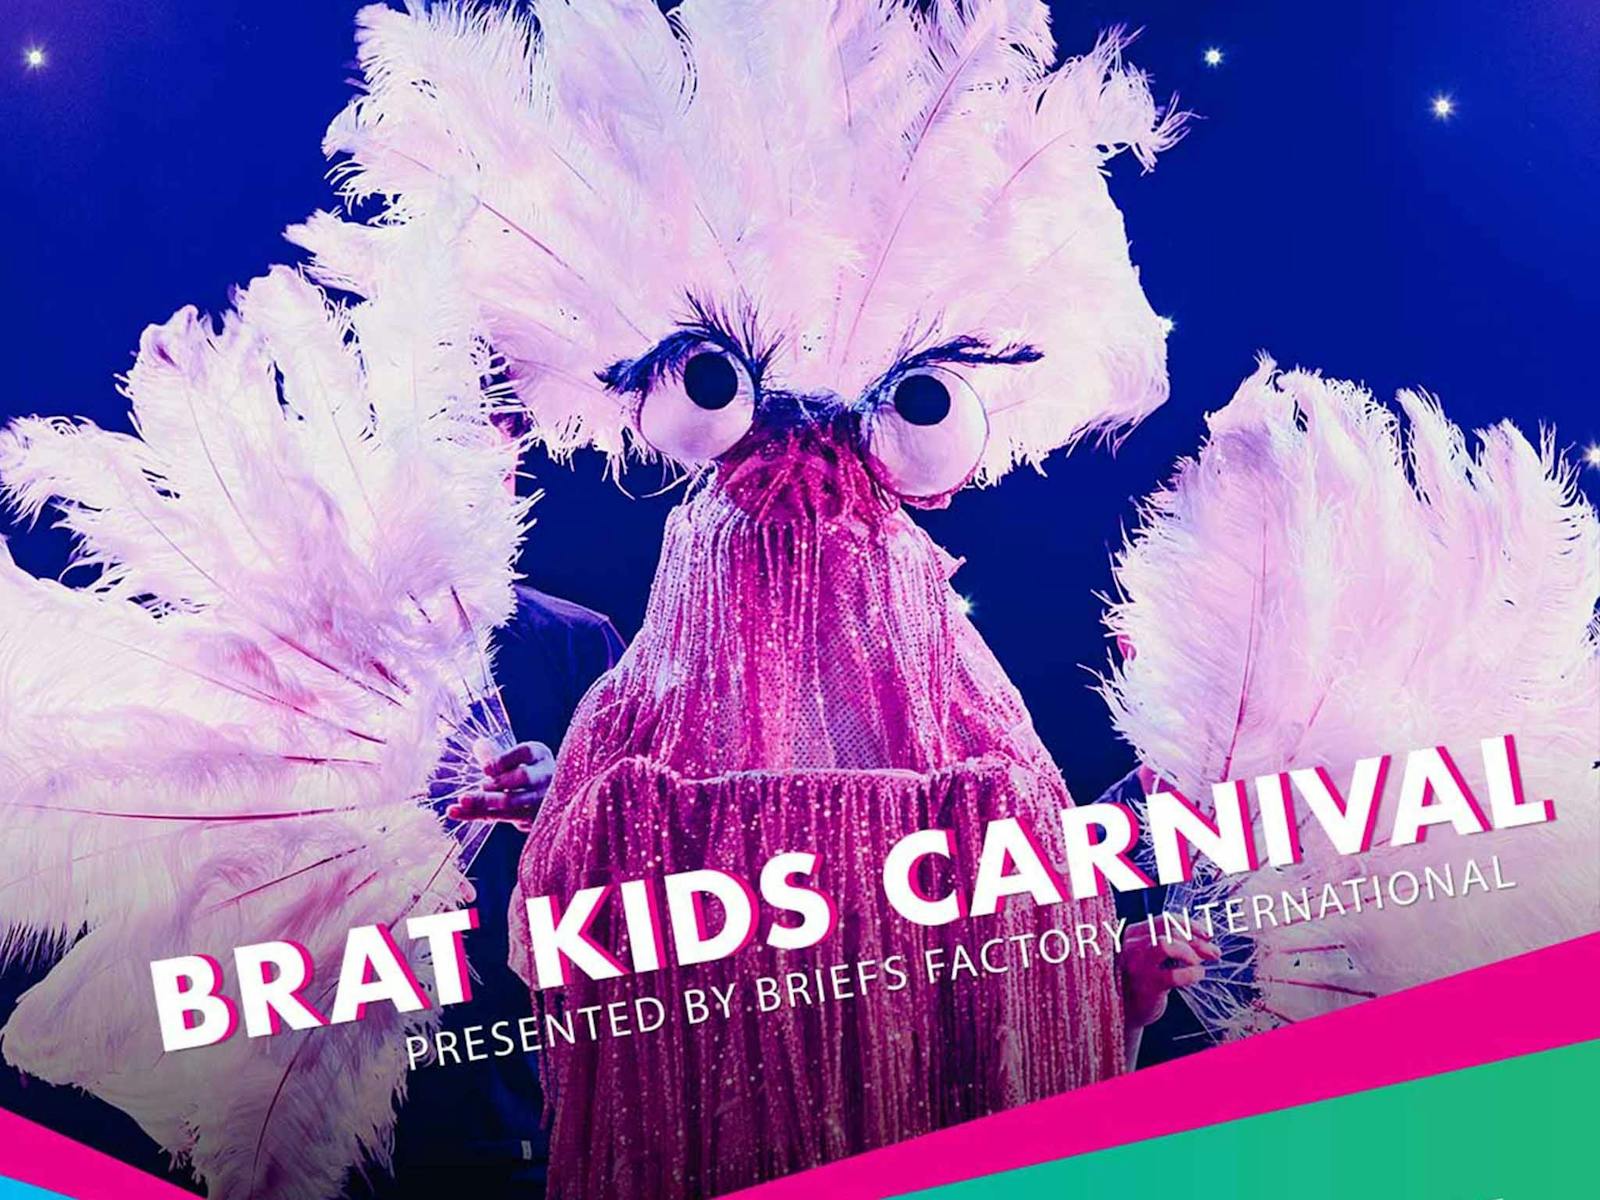 Image for Brat Kids Carnival